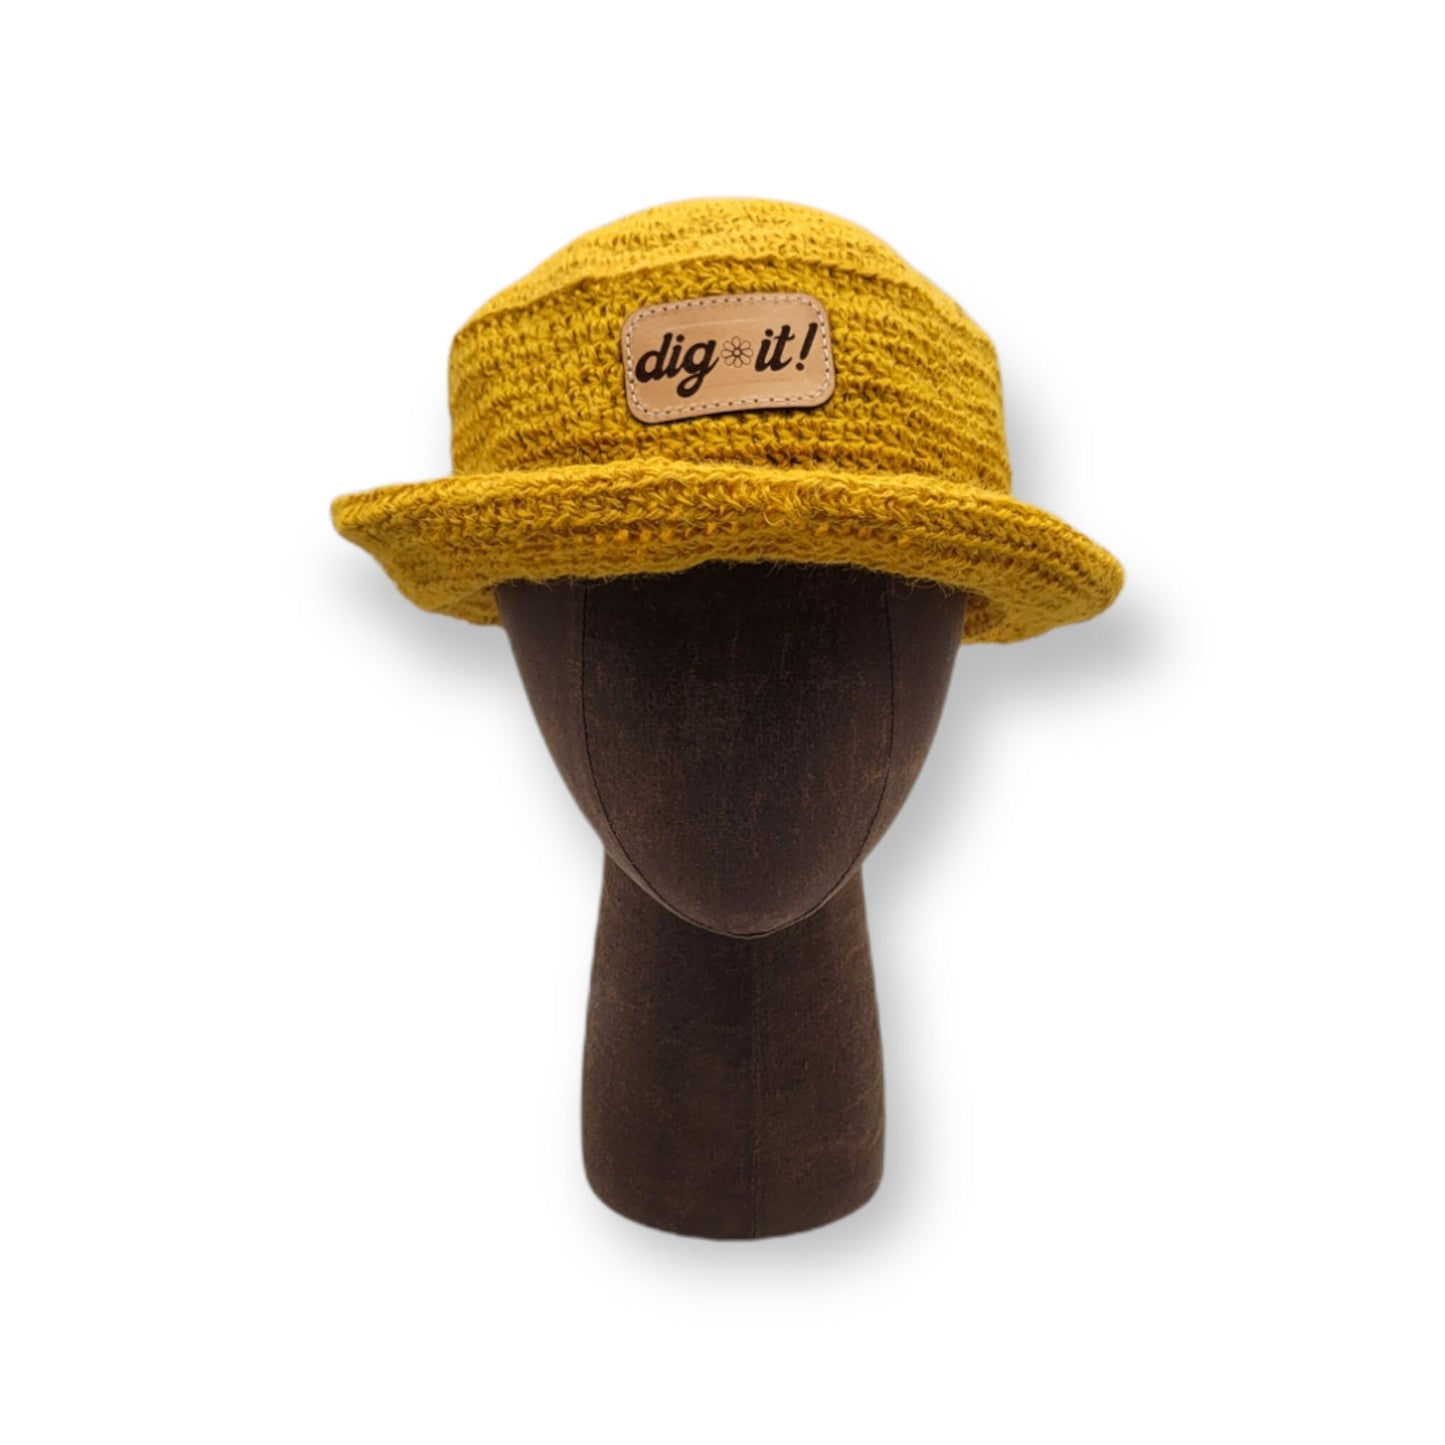 Hemp Bucket Hat - Gardening Hat - Dig It - Sun Hat- Spring Summer Hemp Hat Bucket